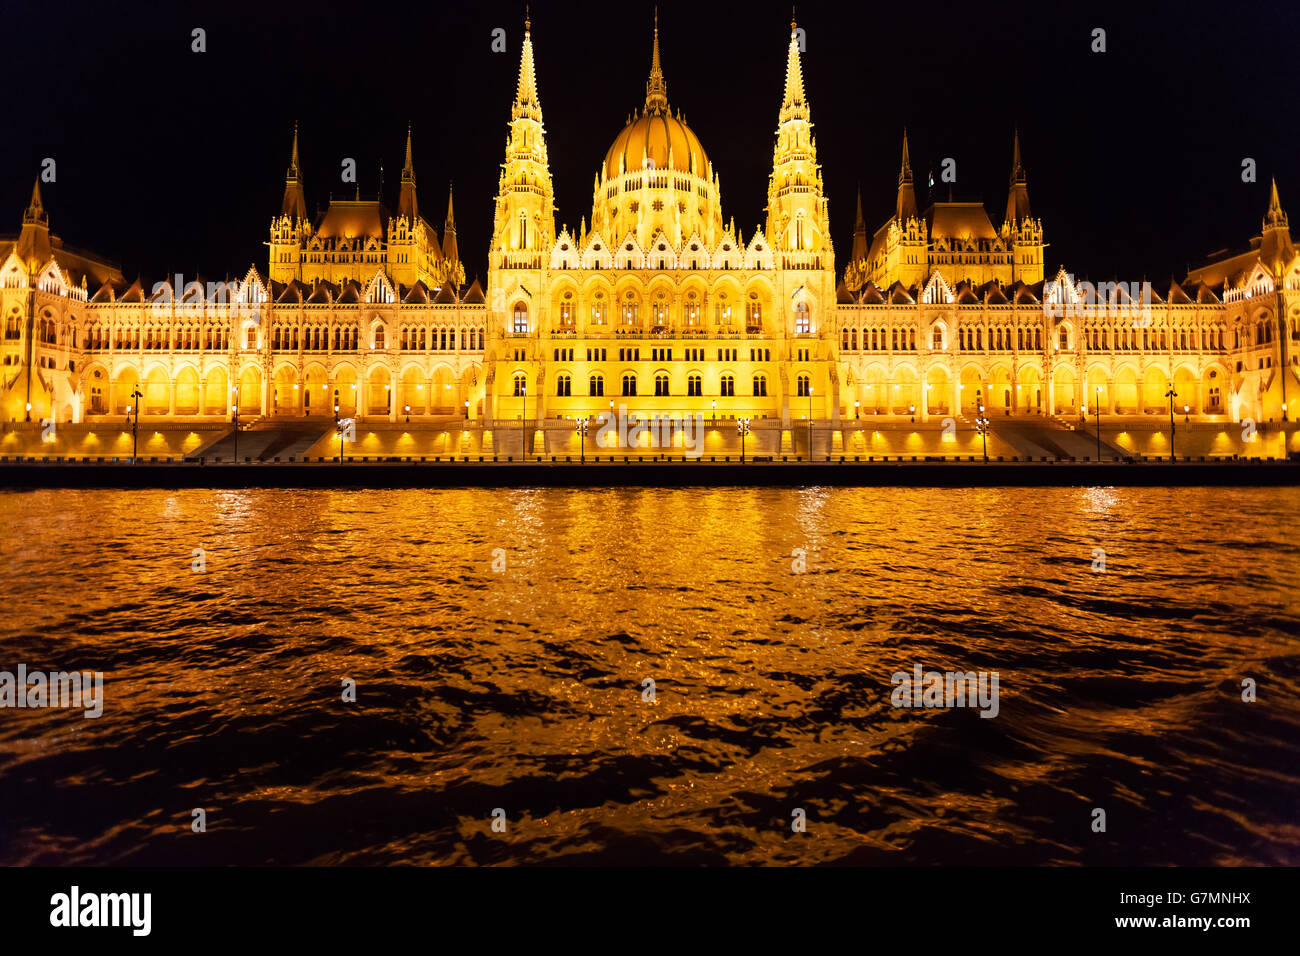 Photo du parlement hongrois dans la nuit. Banque D'Images